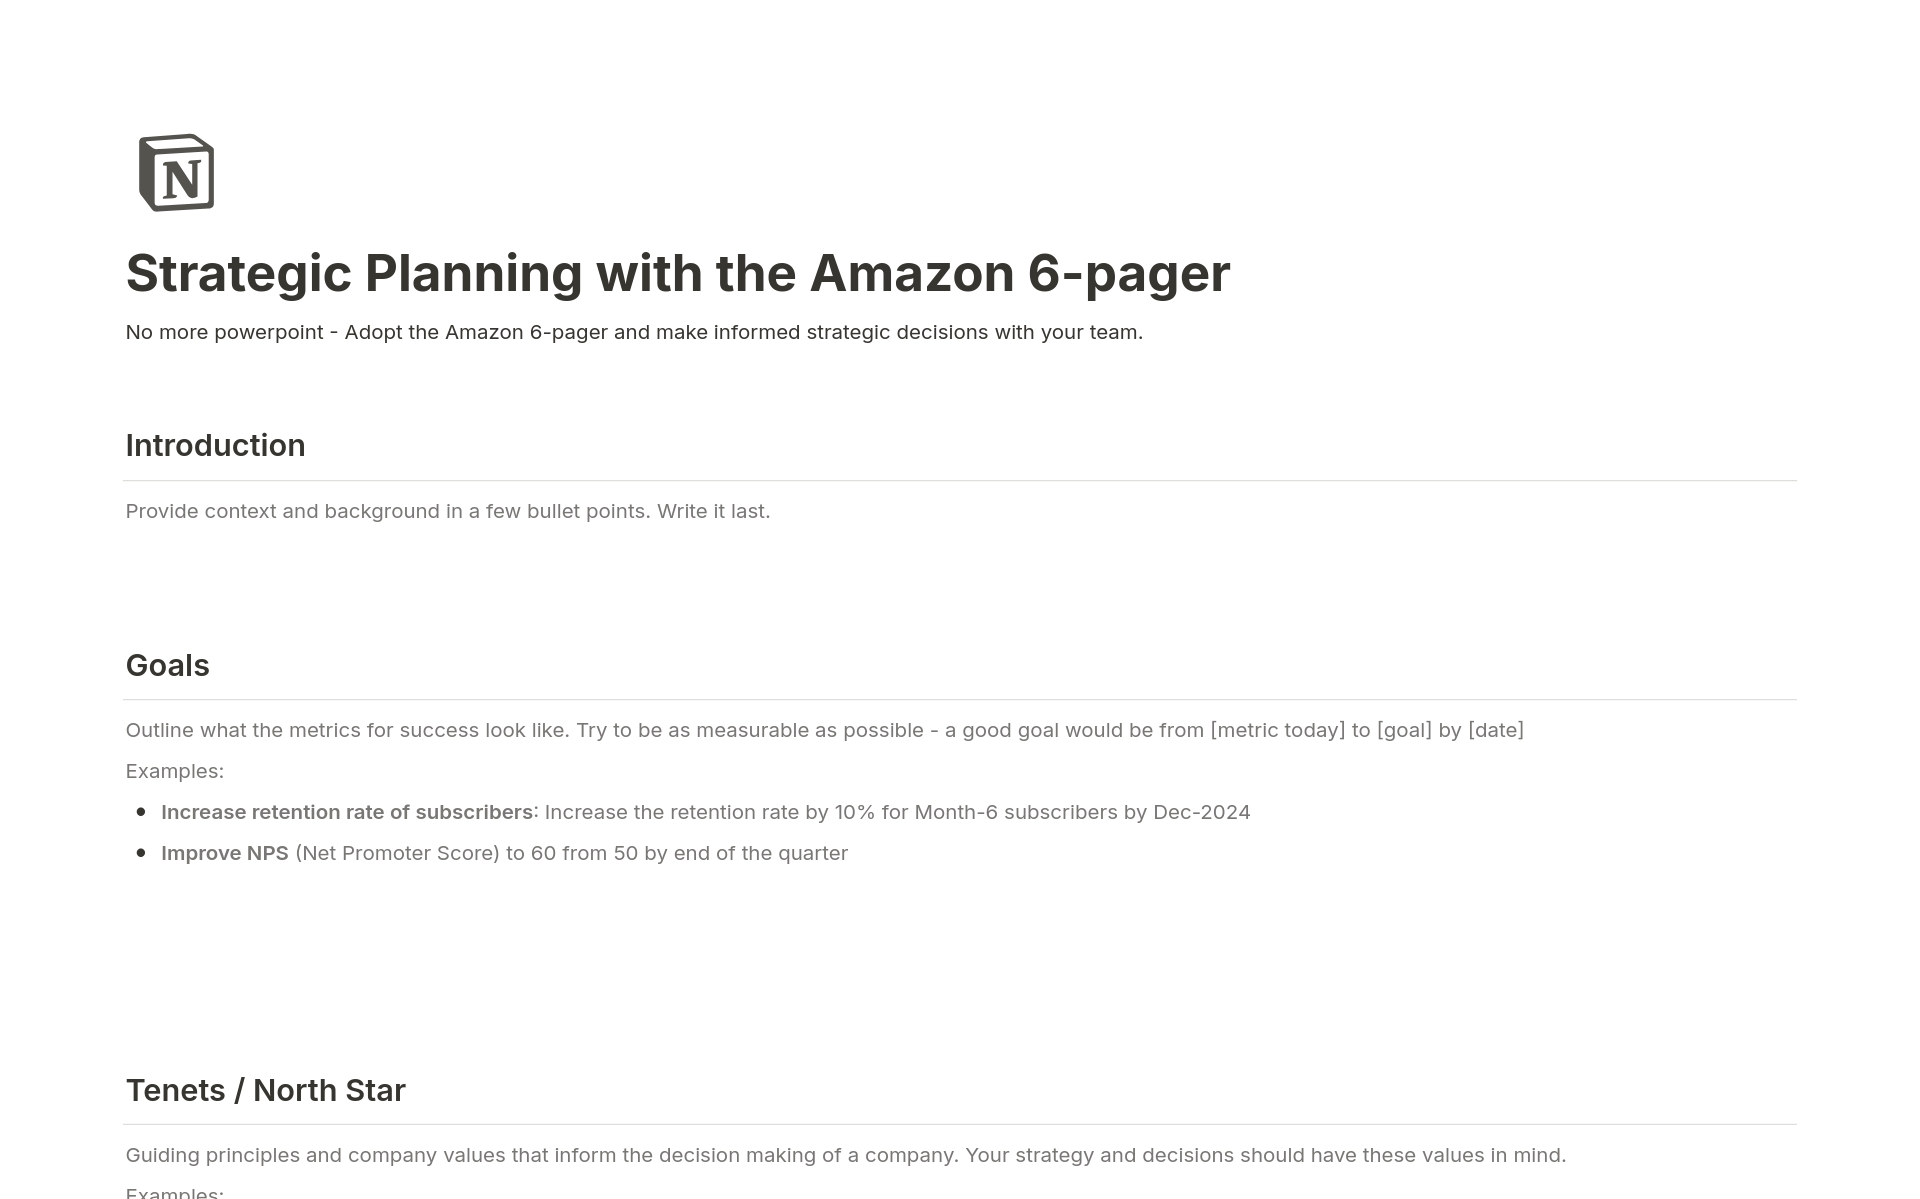 Vista previa de una plantilla para Strategic Planning with the Amazon 6-pager